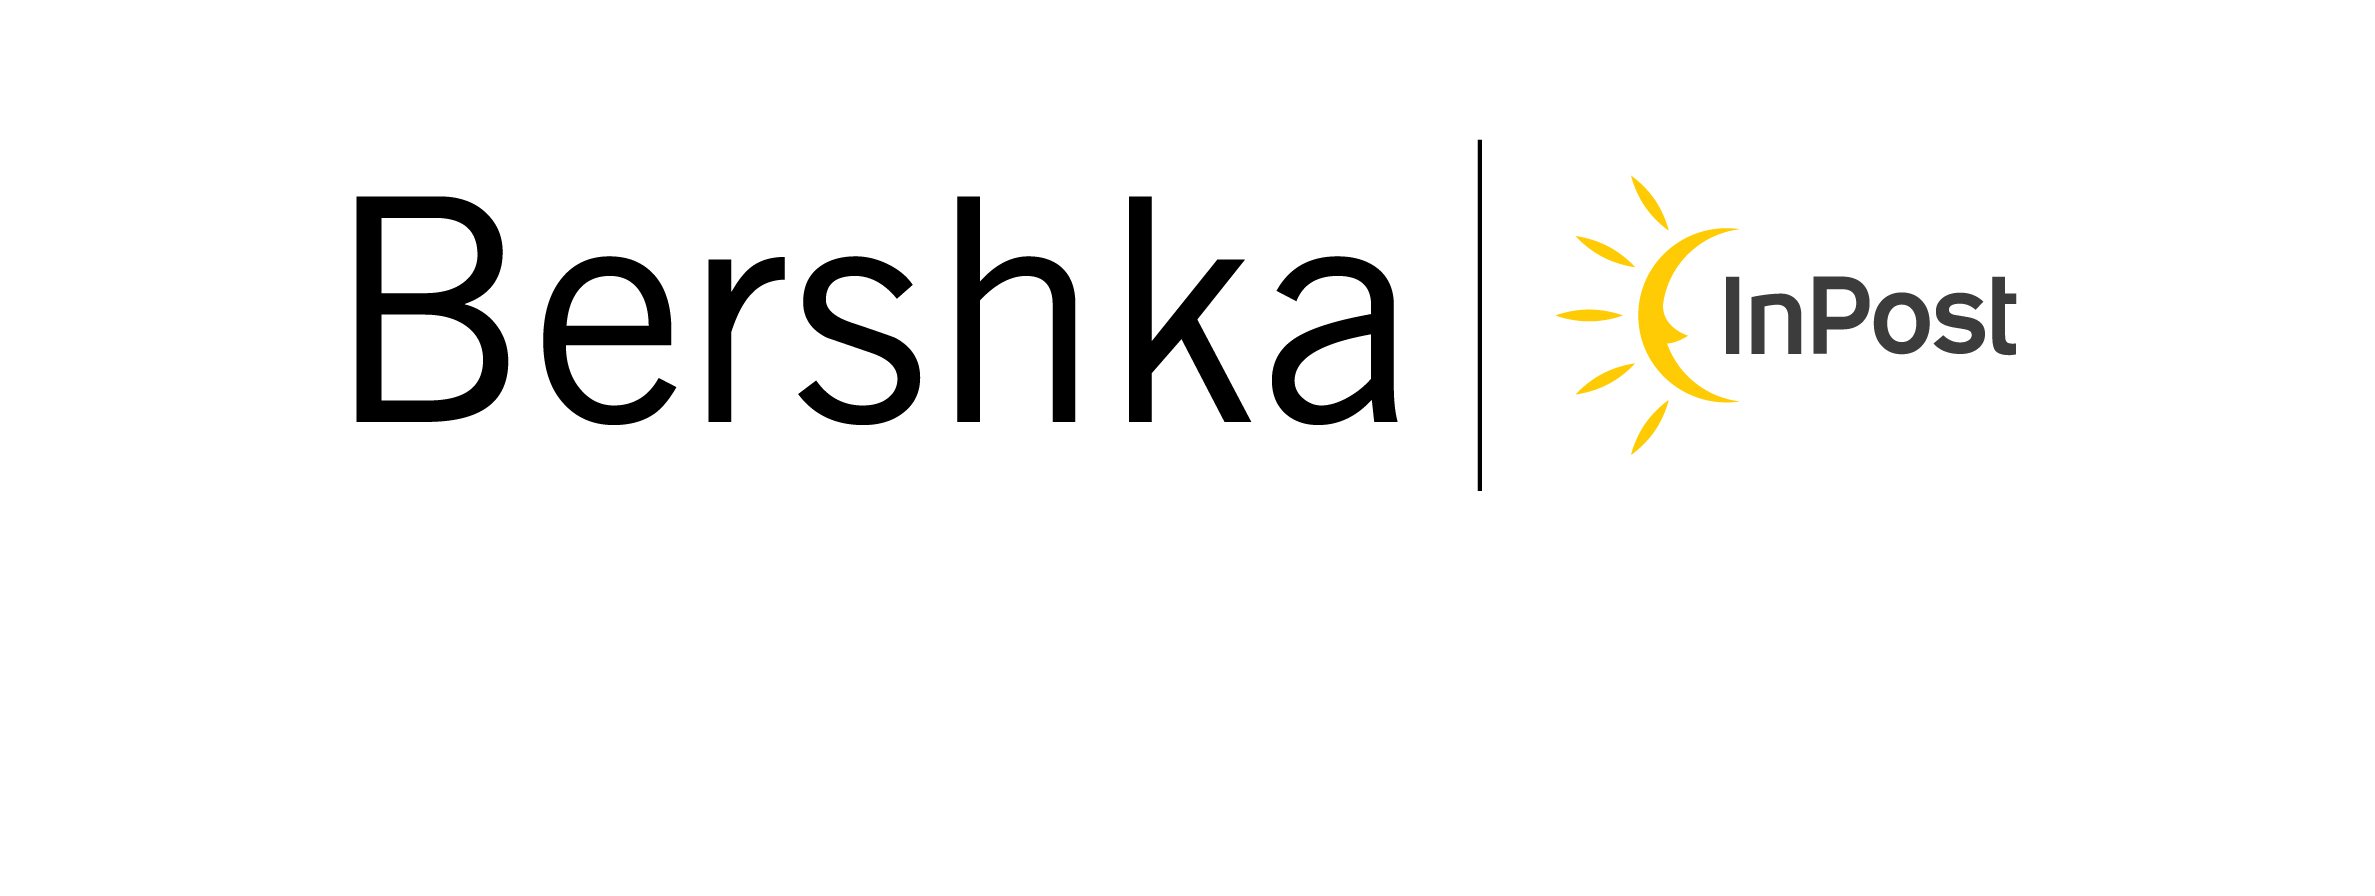 logos de las marcas inpost y Bershka